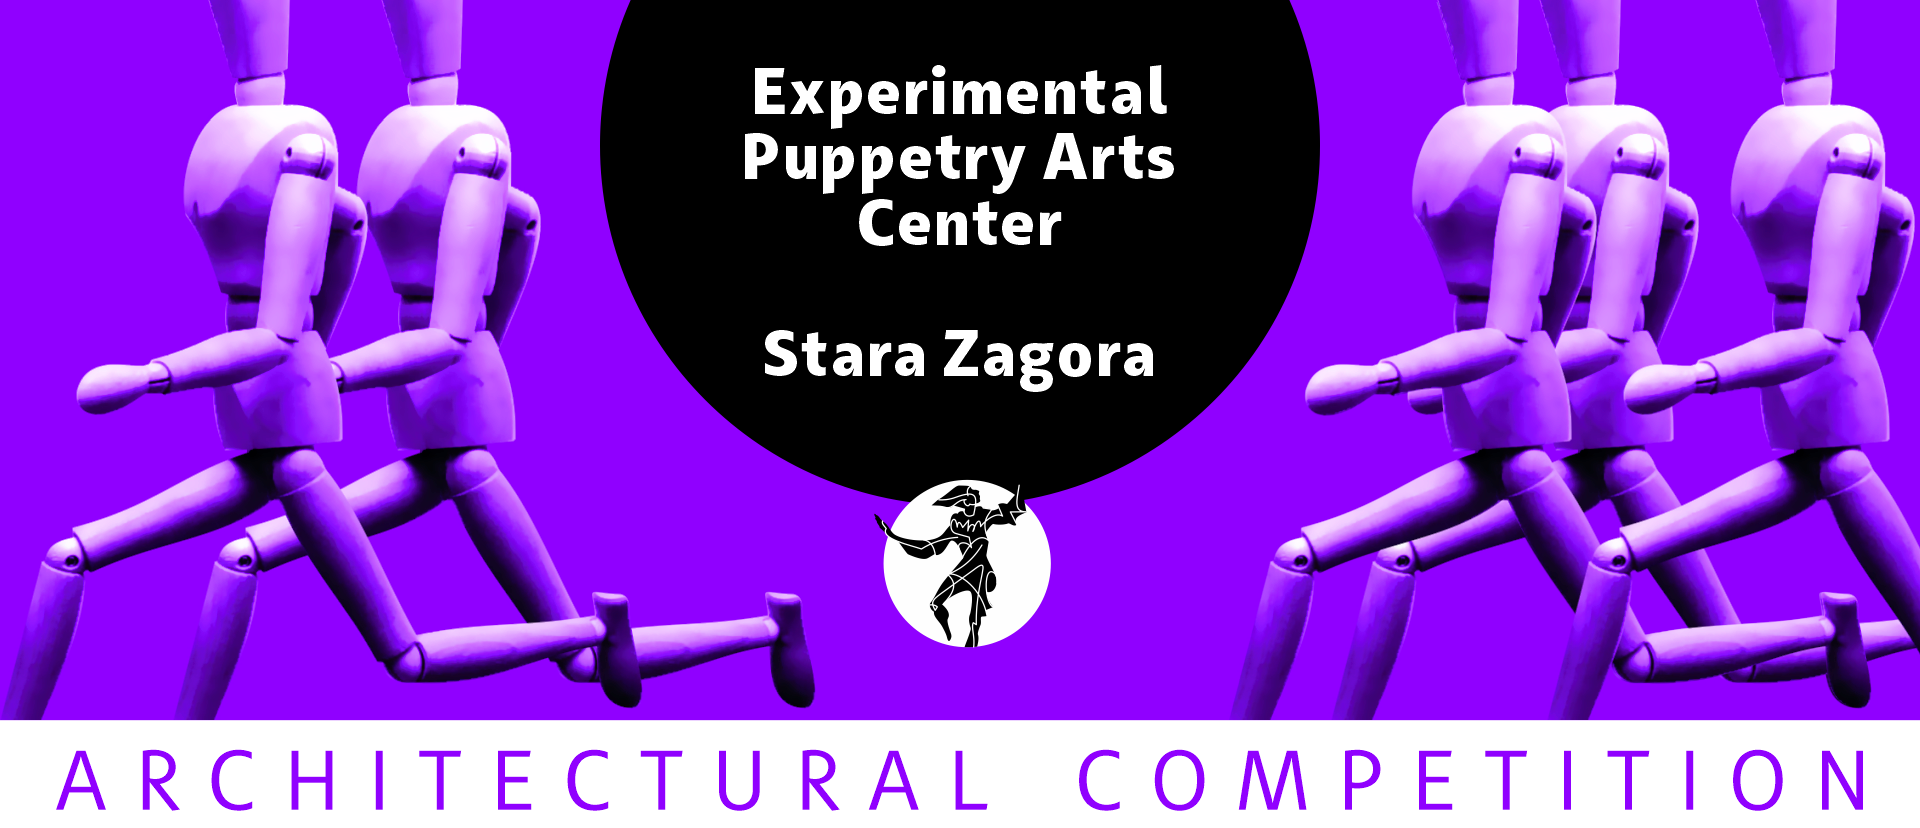 保加利亚旧扎戈拉国家木偶剧院实验木偶剧艺术中心国际公开概念建筑竞赛